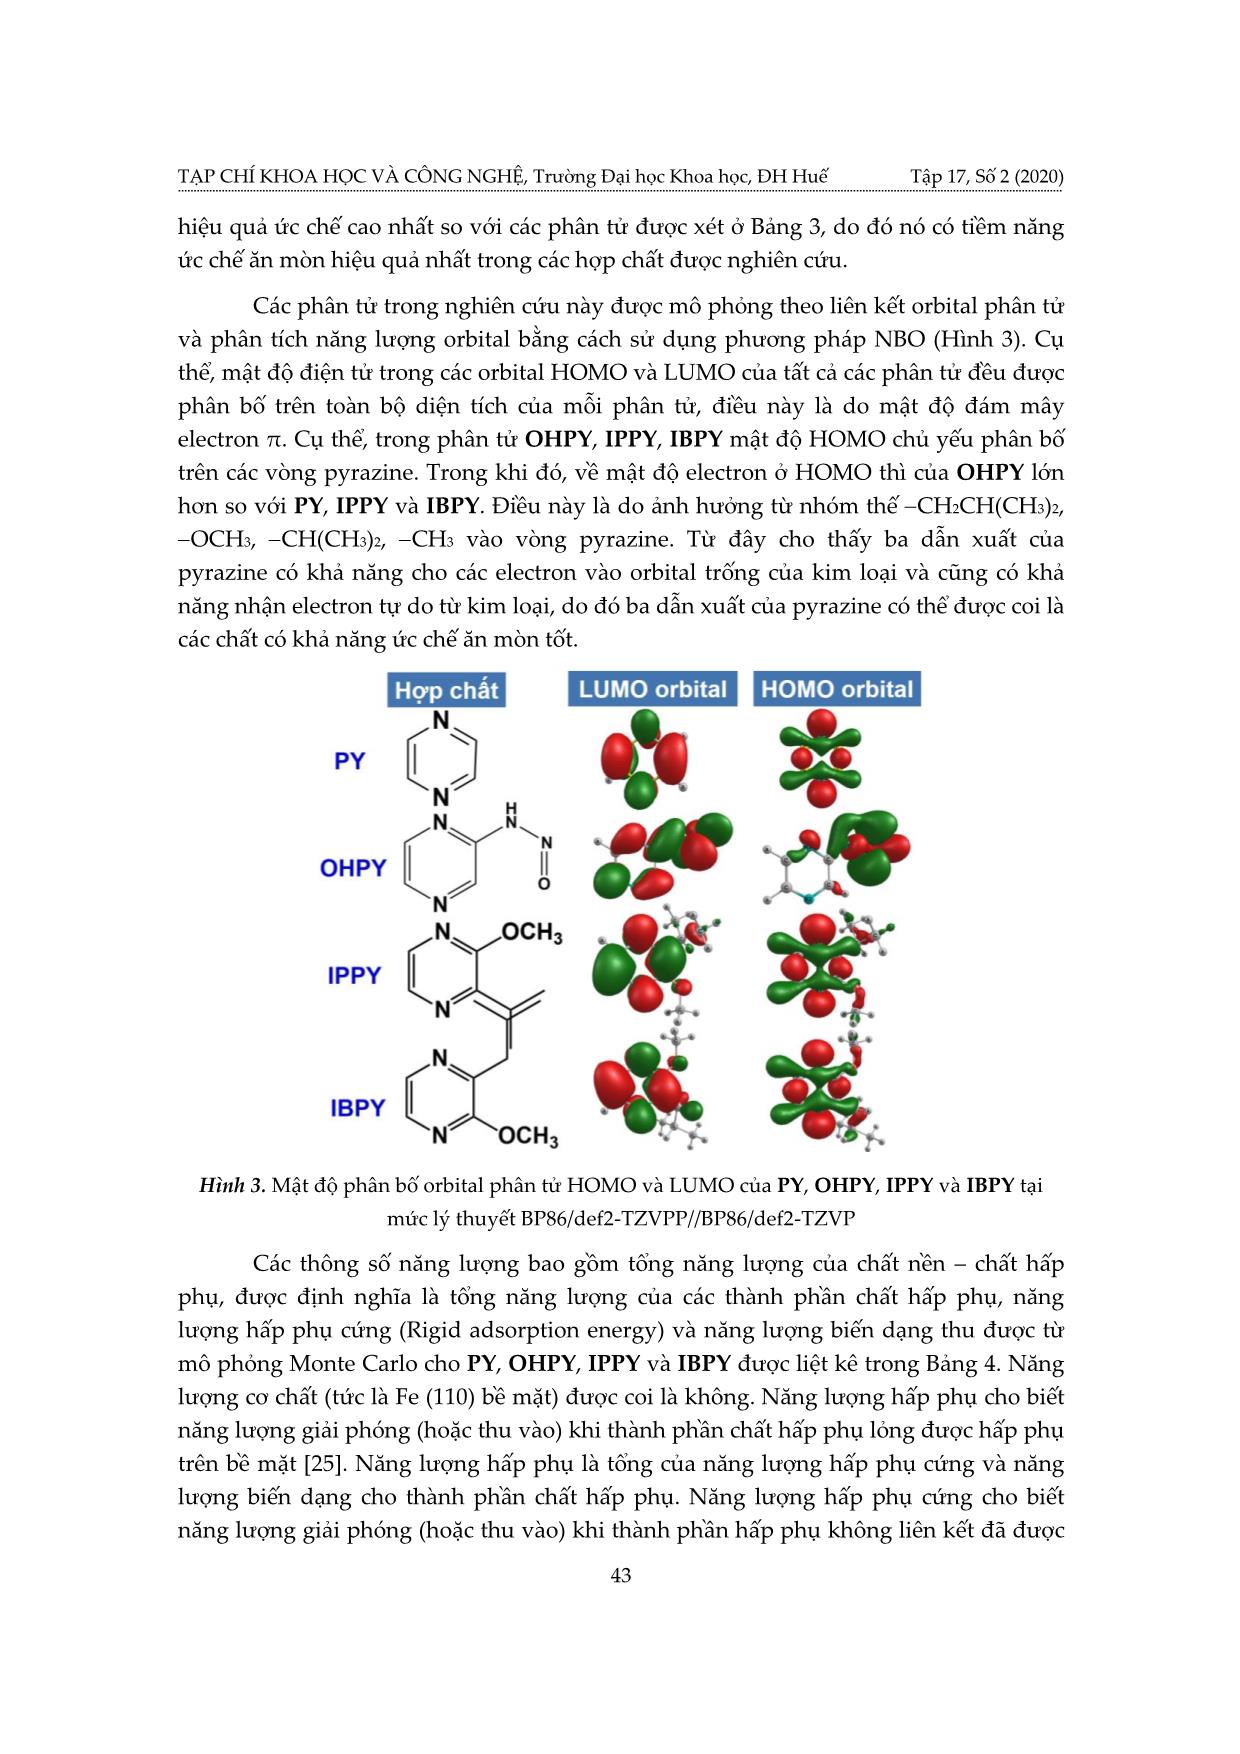 Nghiên cứu cấu trúc, tính chất và khả năng ức chế ăn mòn Fe (110) của pyrazine và dẫn xuất bằng tính toán hóa lượng tử trang 7